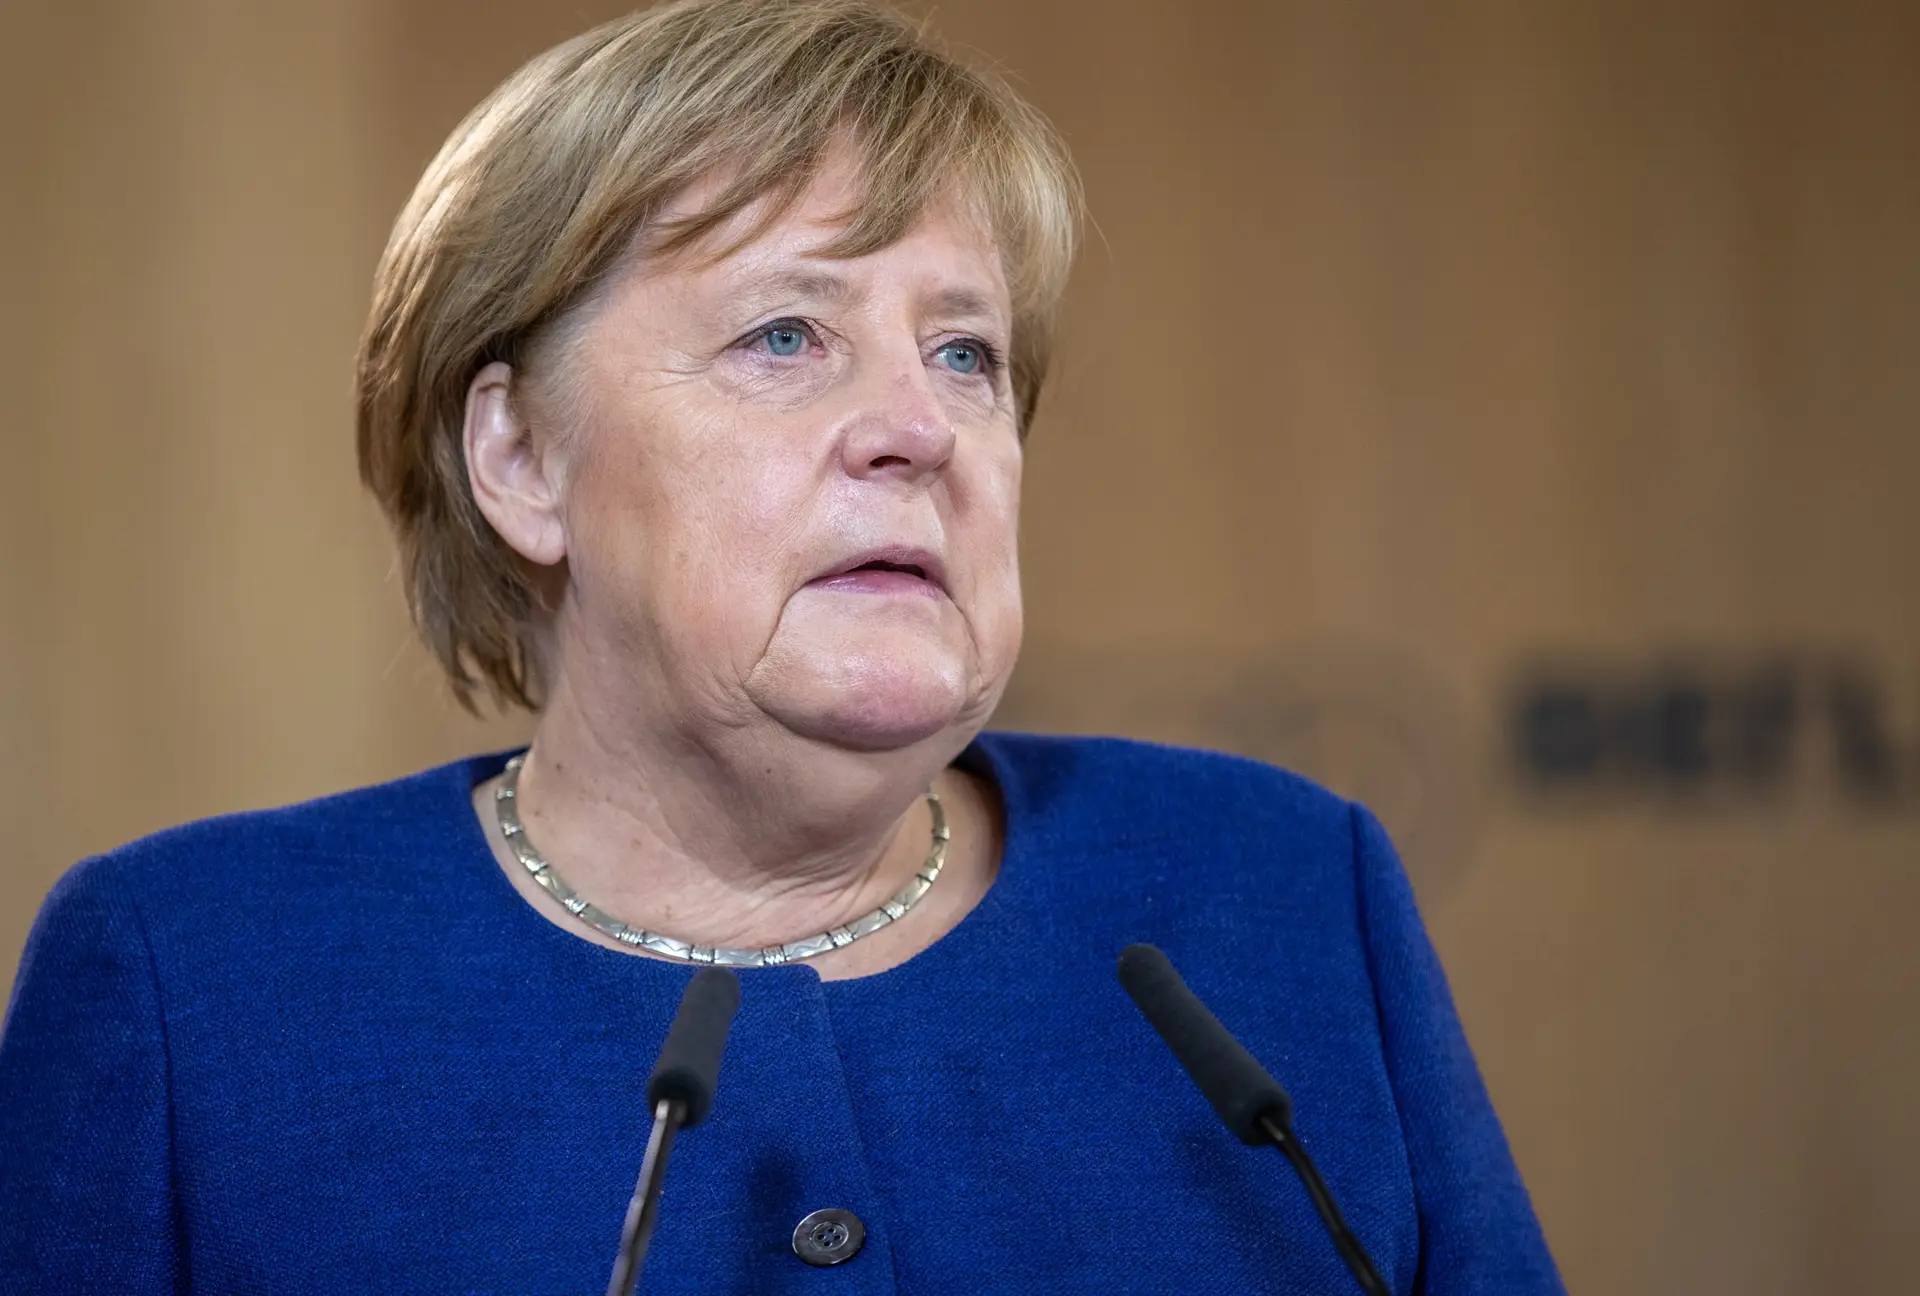 Angela Merkel distinguida com Prémio da Paz da UNESCO pelos esforços no acolhimento de refugiados